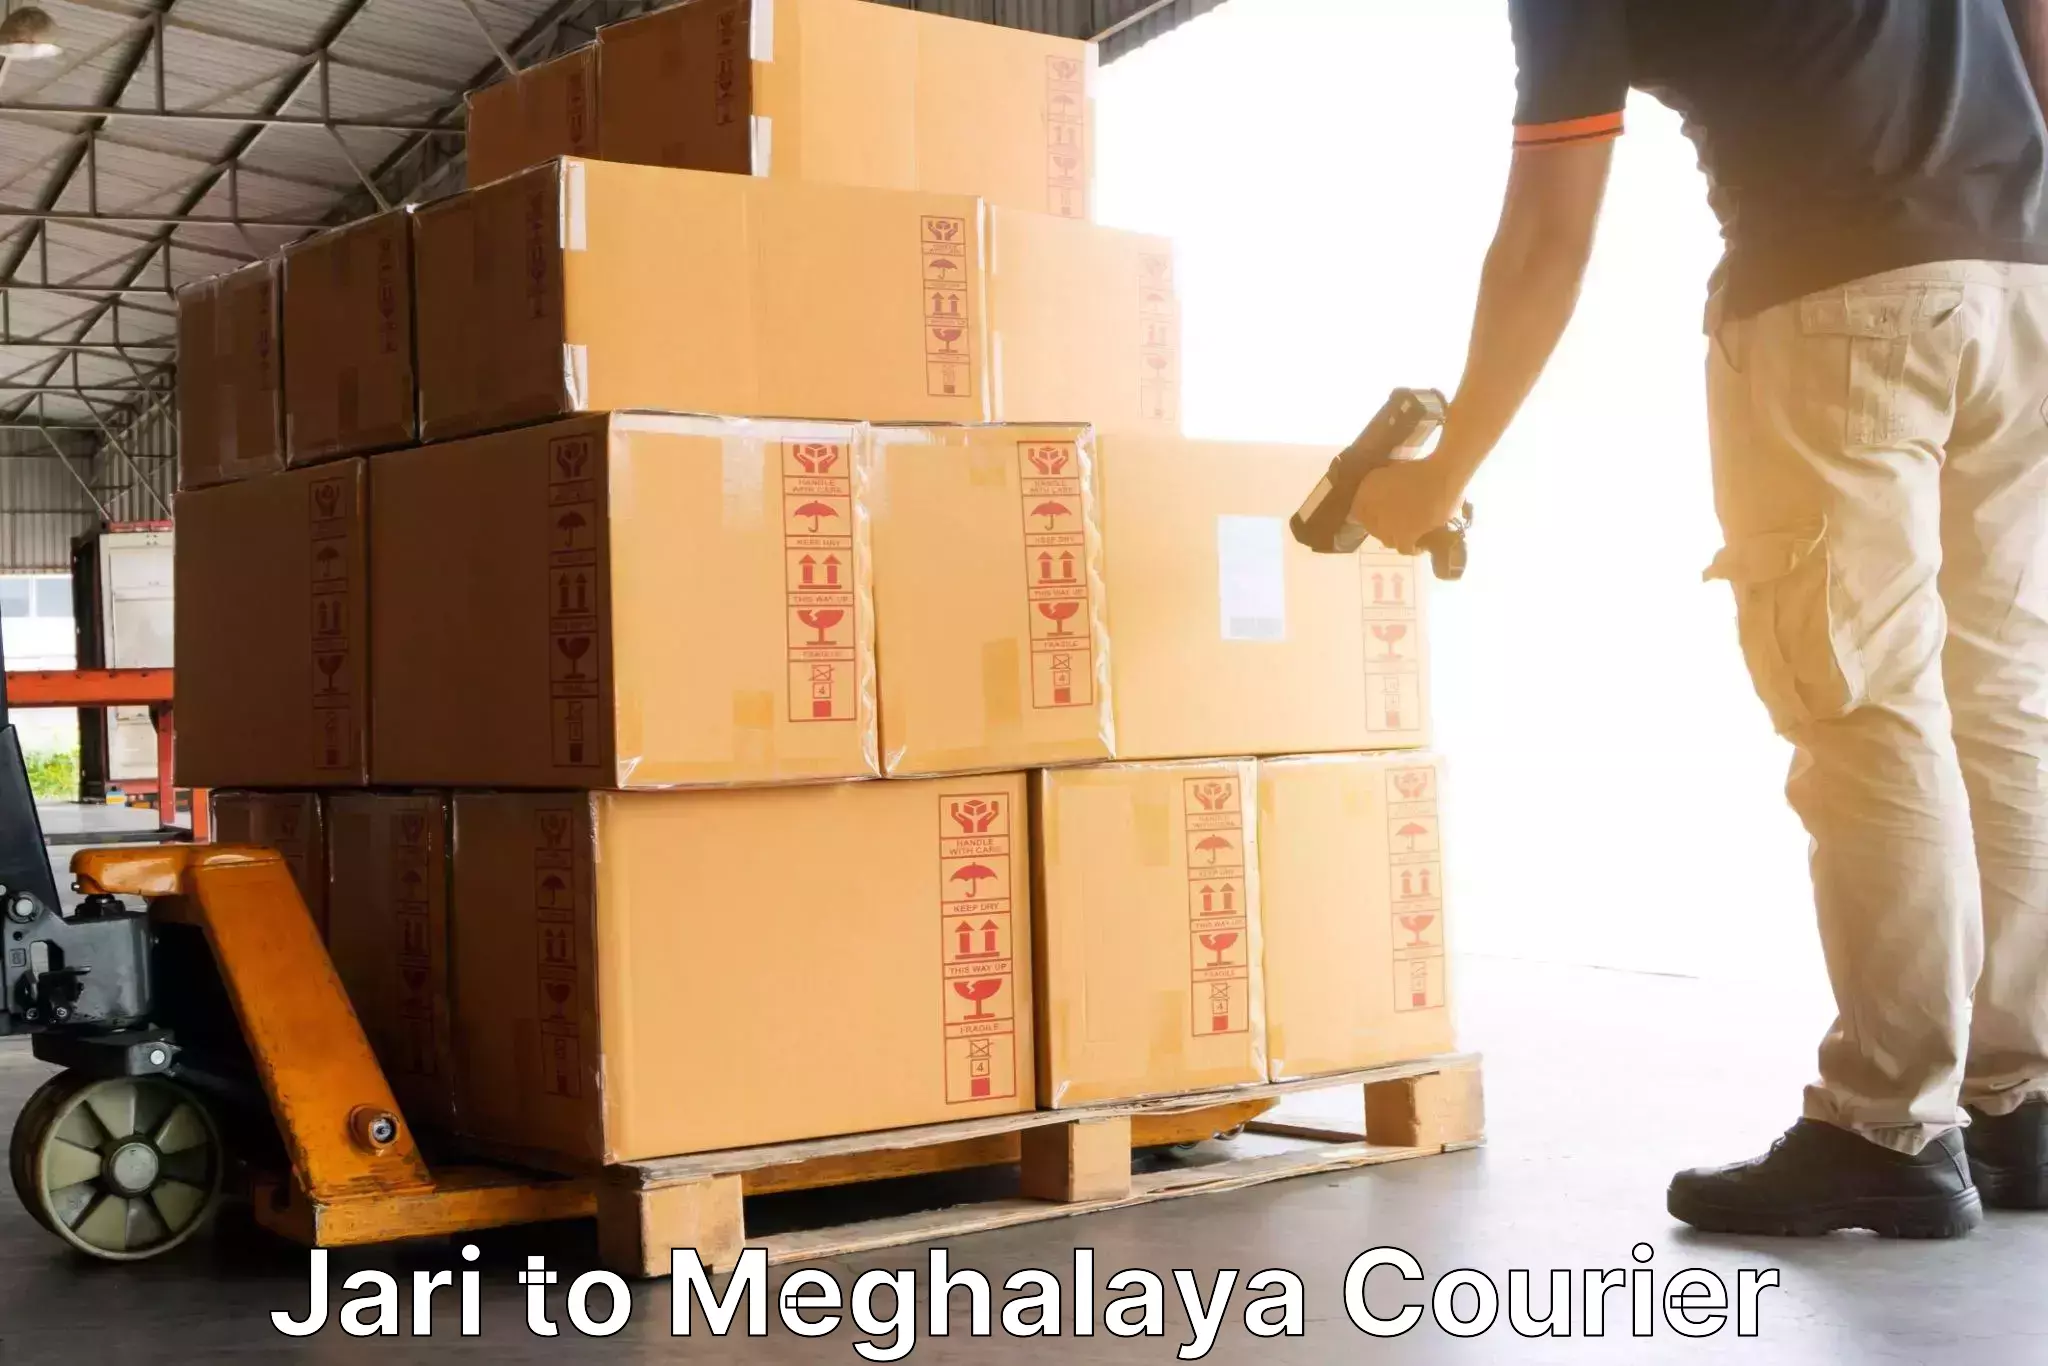 Efficient parcel service Jari to Shillong